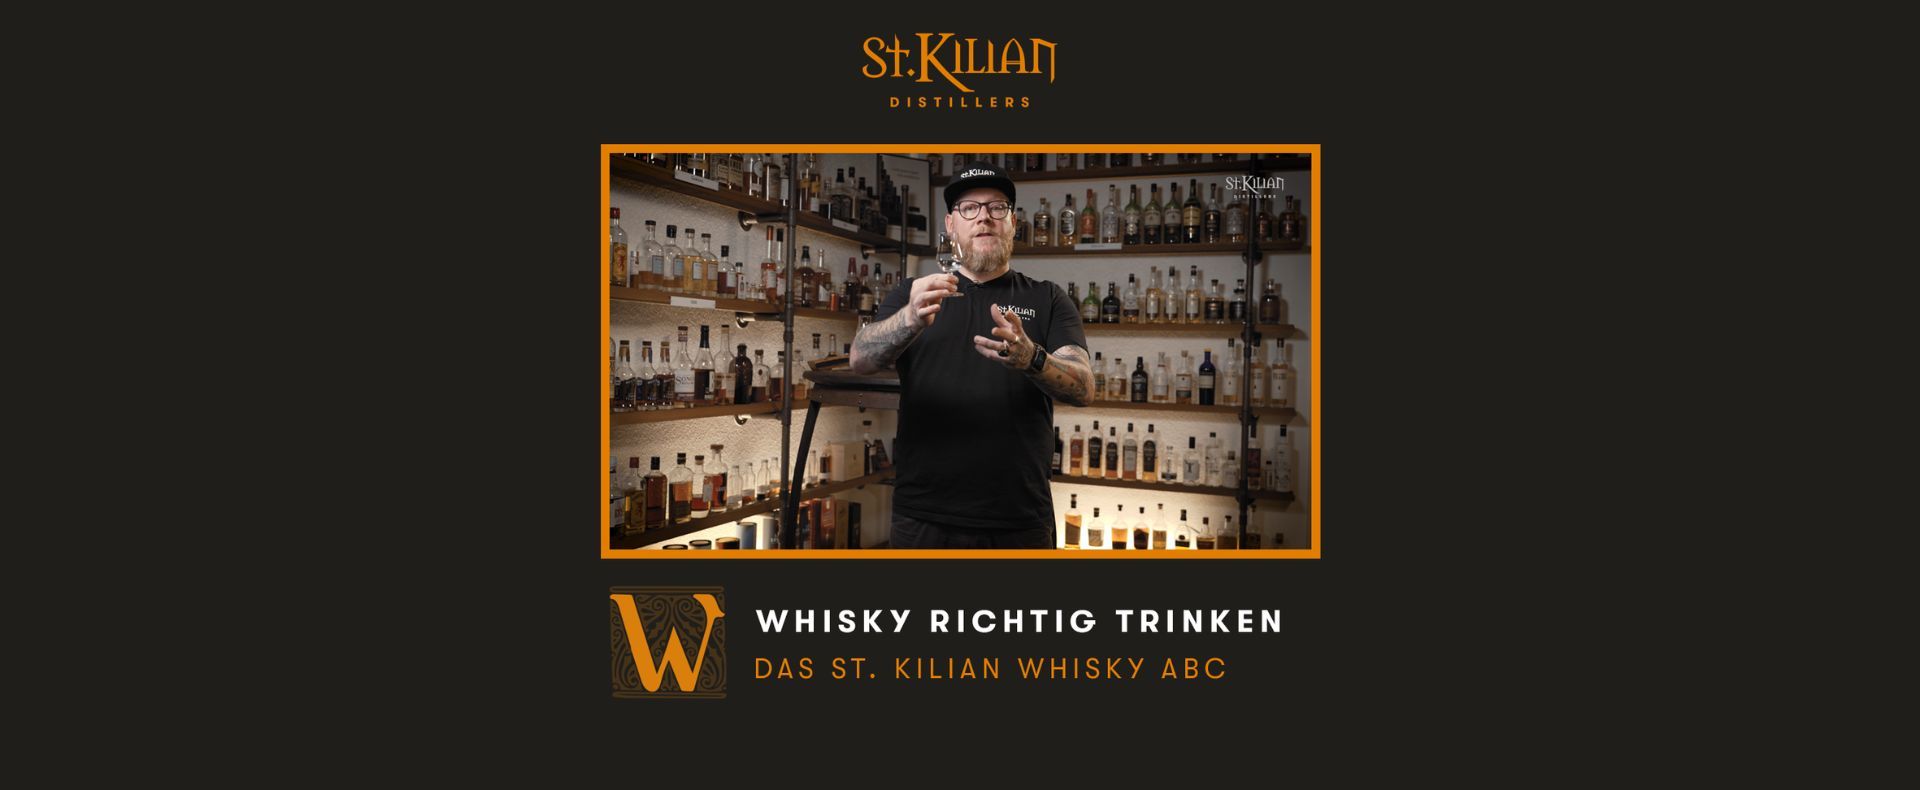 St. Kilian Whisky ABC - W wie Whisky richtig trinken